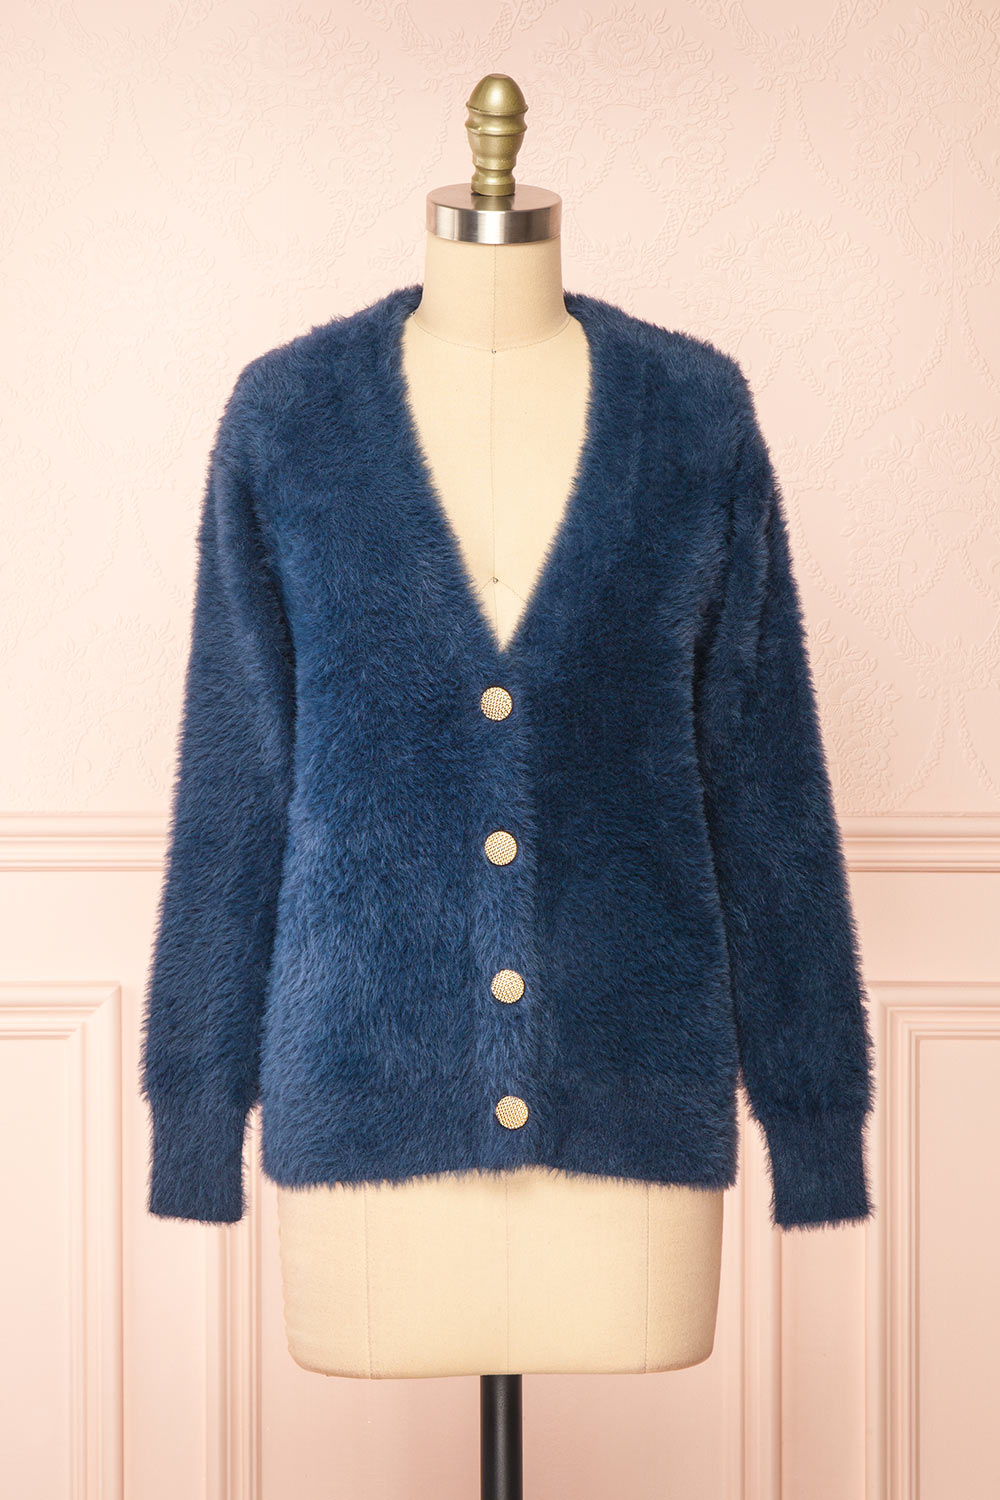 Leni Blue Fuzzy Cardigan | Boutique 1861 front view